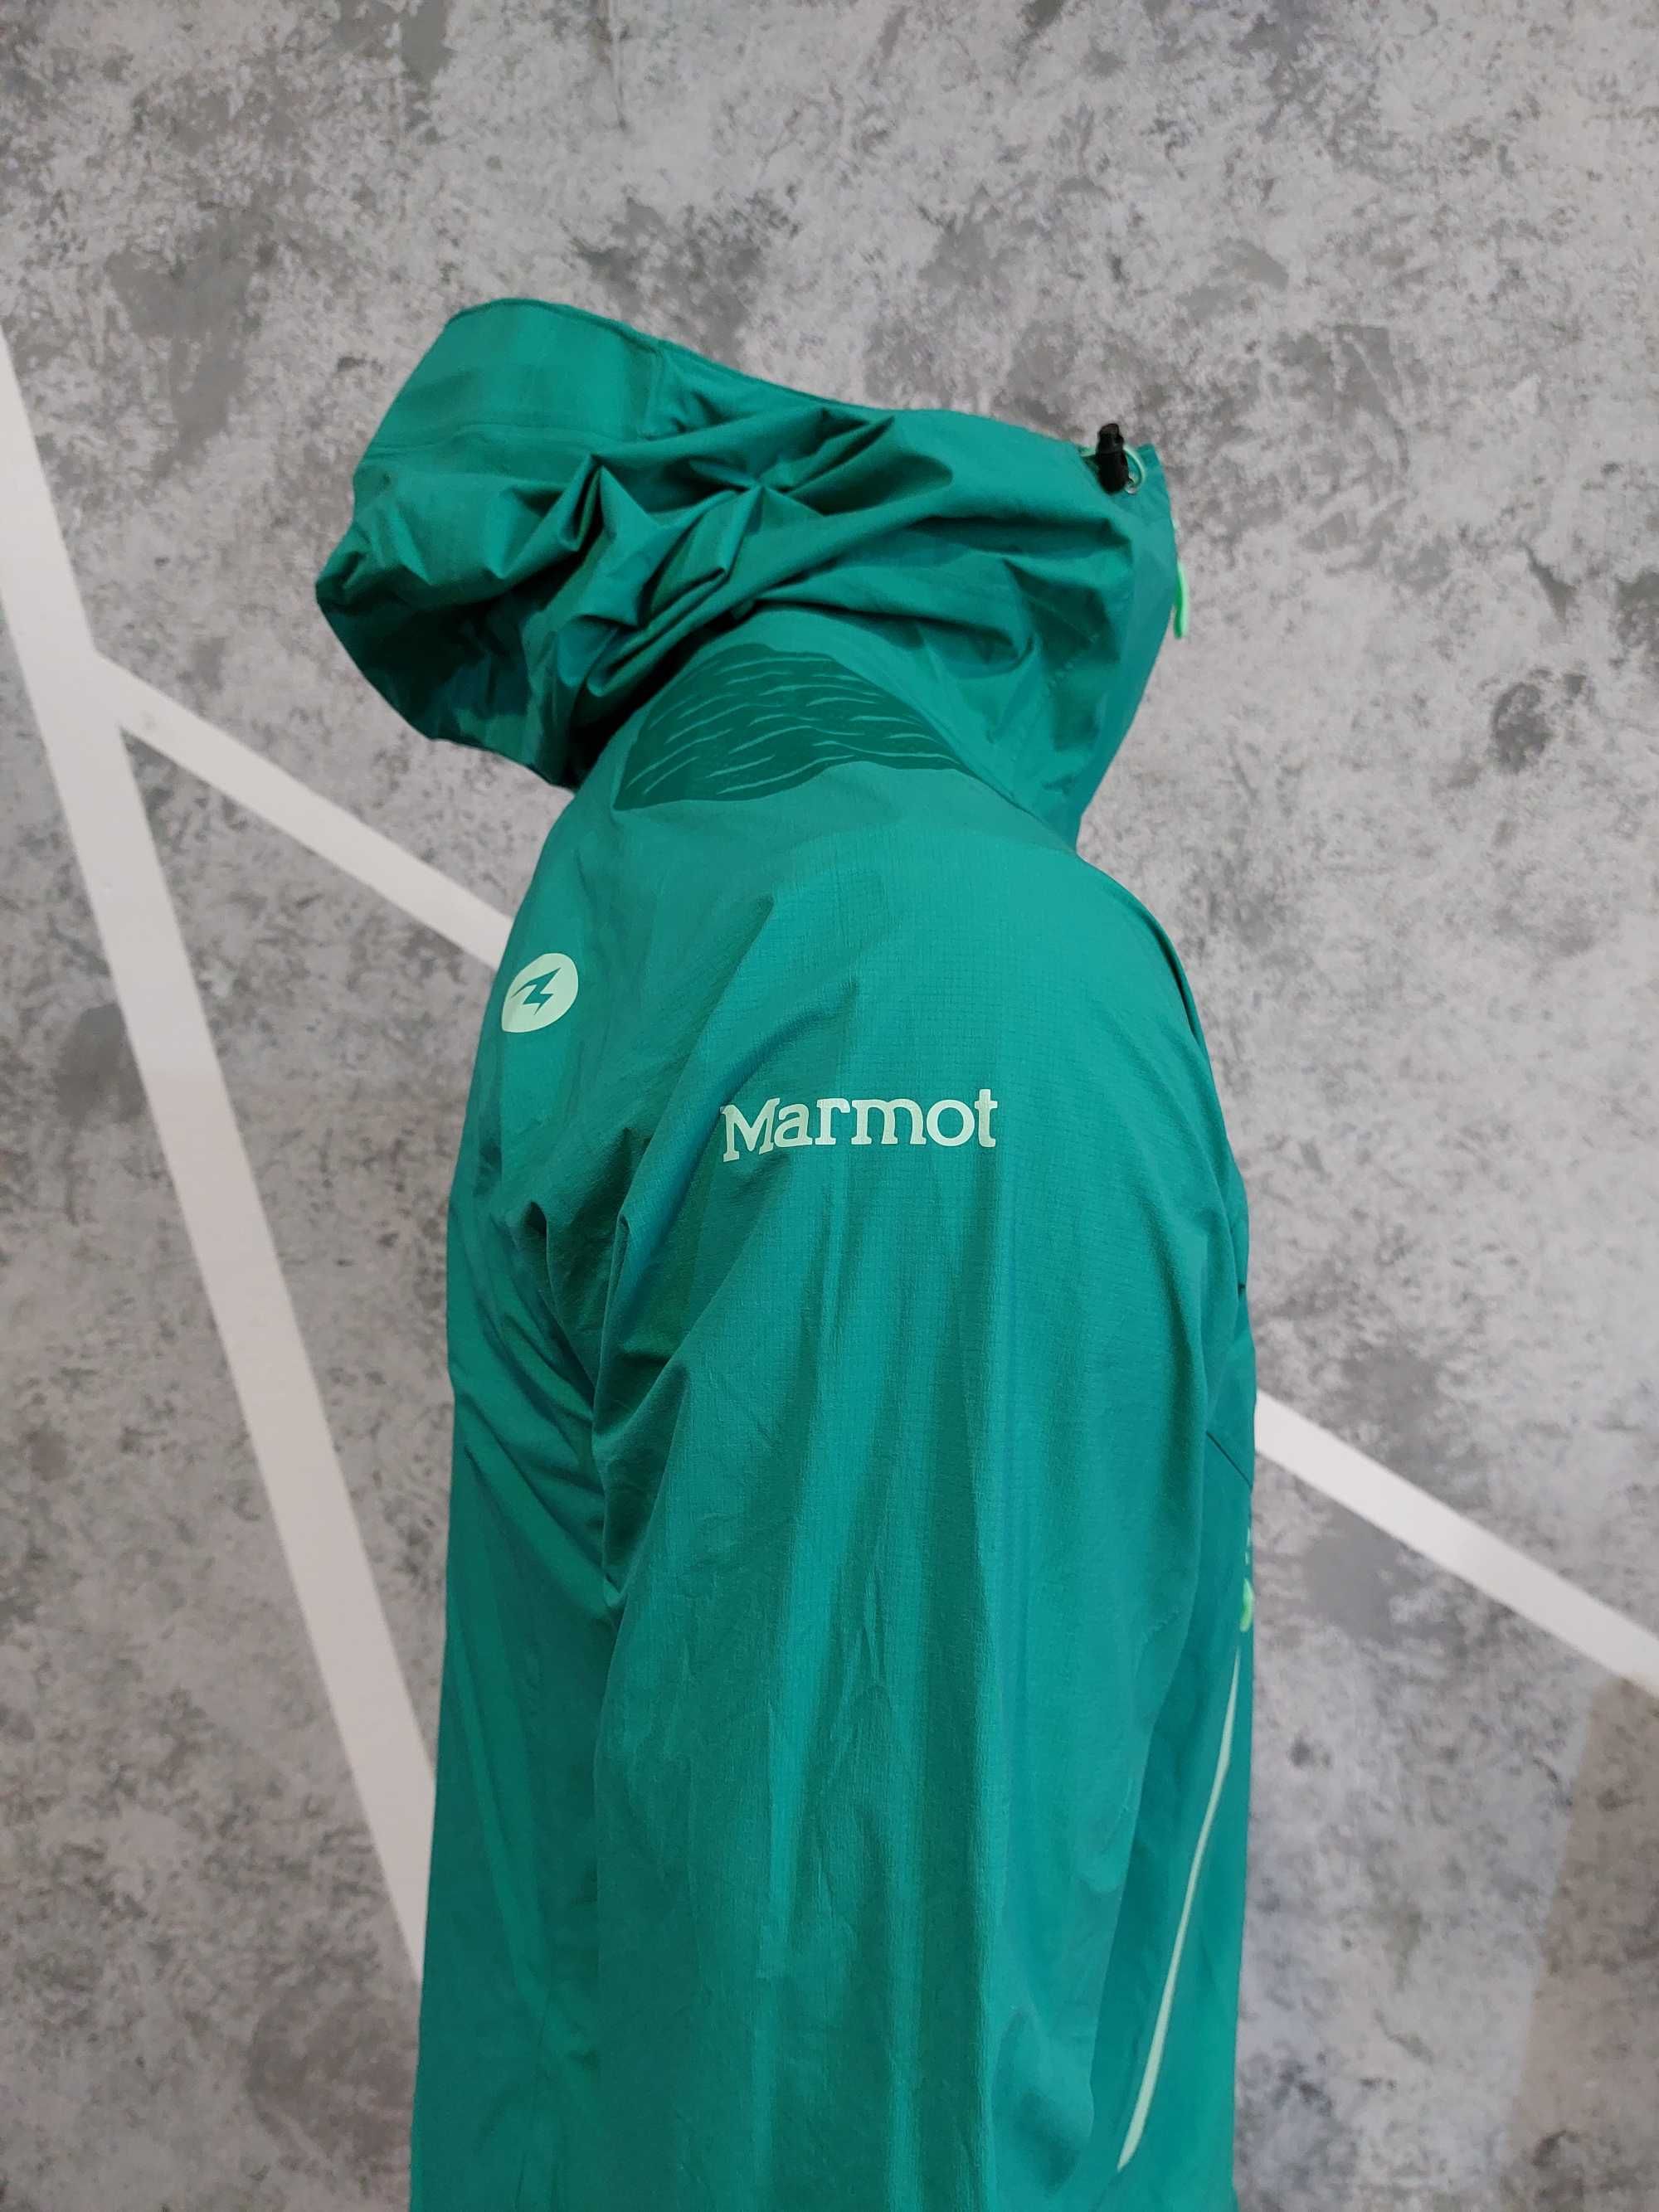 Женская ветровка Marmot Crux Waterproof Jacket RPP 250$